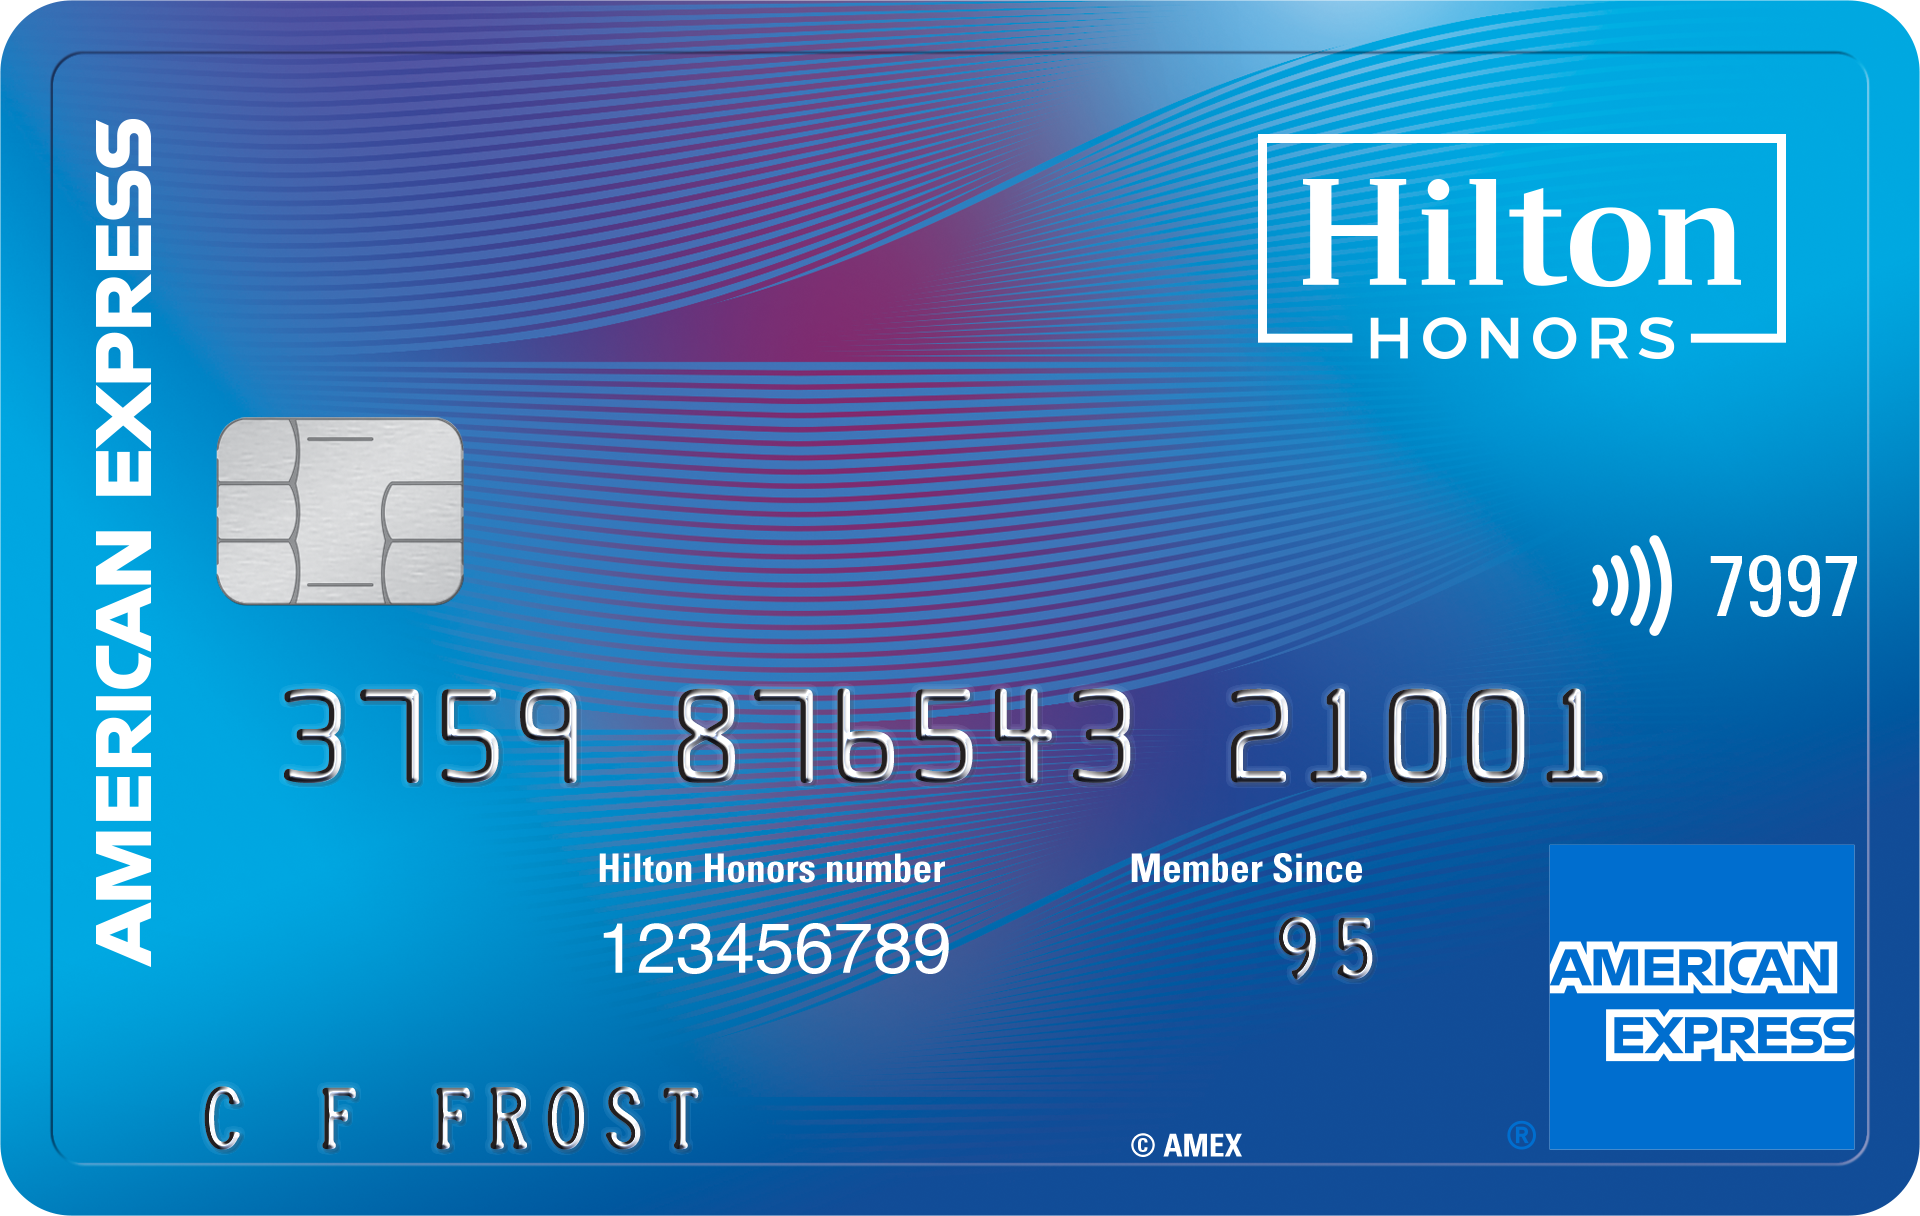 Hilton Honors Card habilitado para chip, sem contato para pagar